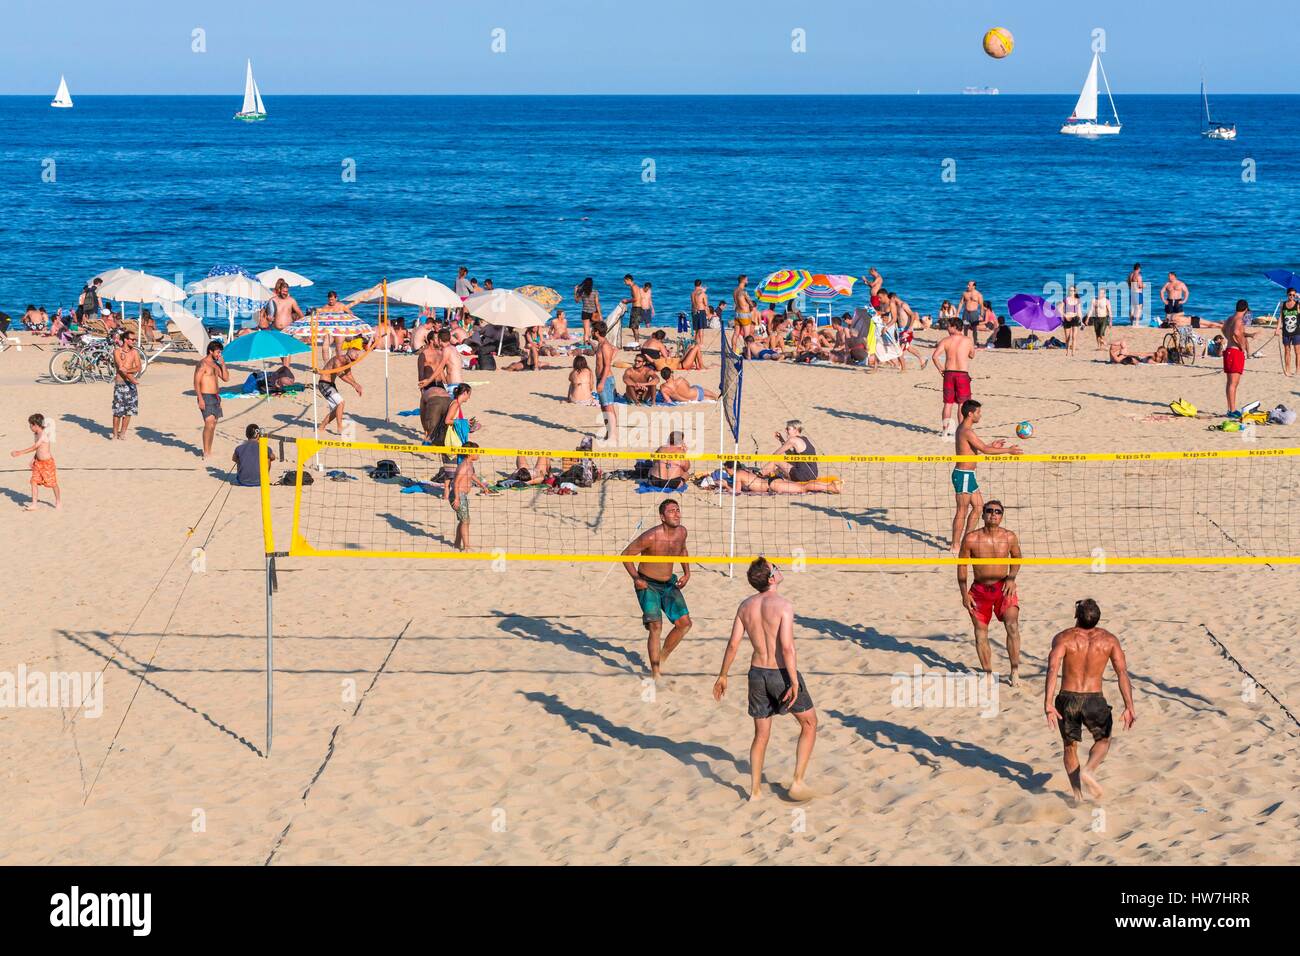 In Spagna, in Catalogna, Barcellona, La Vila Olimpica del Poblenou, Bogatell spiaggia, beach volley Foto Stock